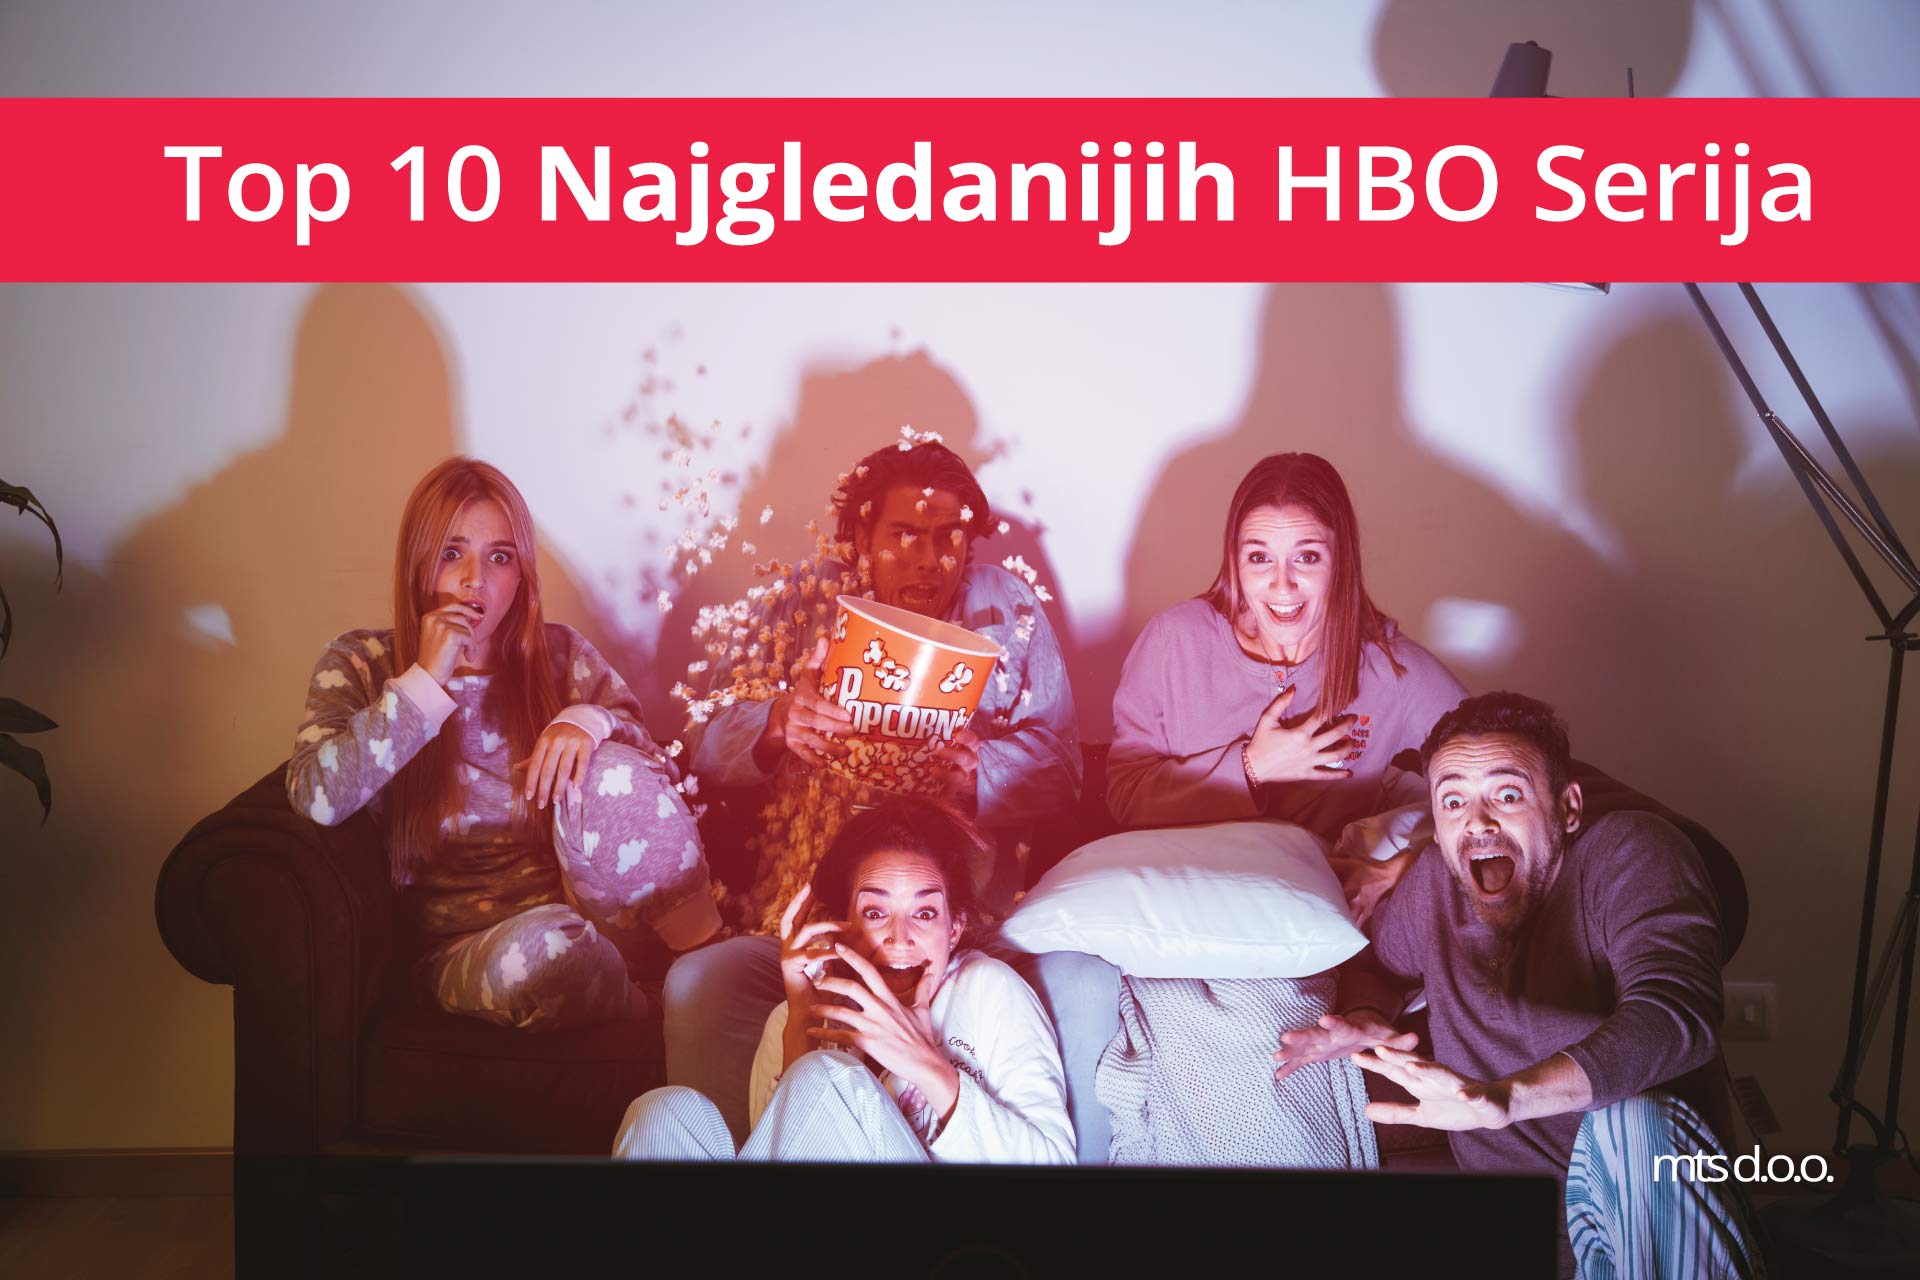 top 10 najgledanijih hbo serija - hbo serije - ljudi na kaucu gledaju tv 